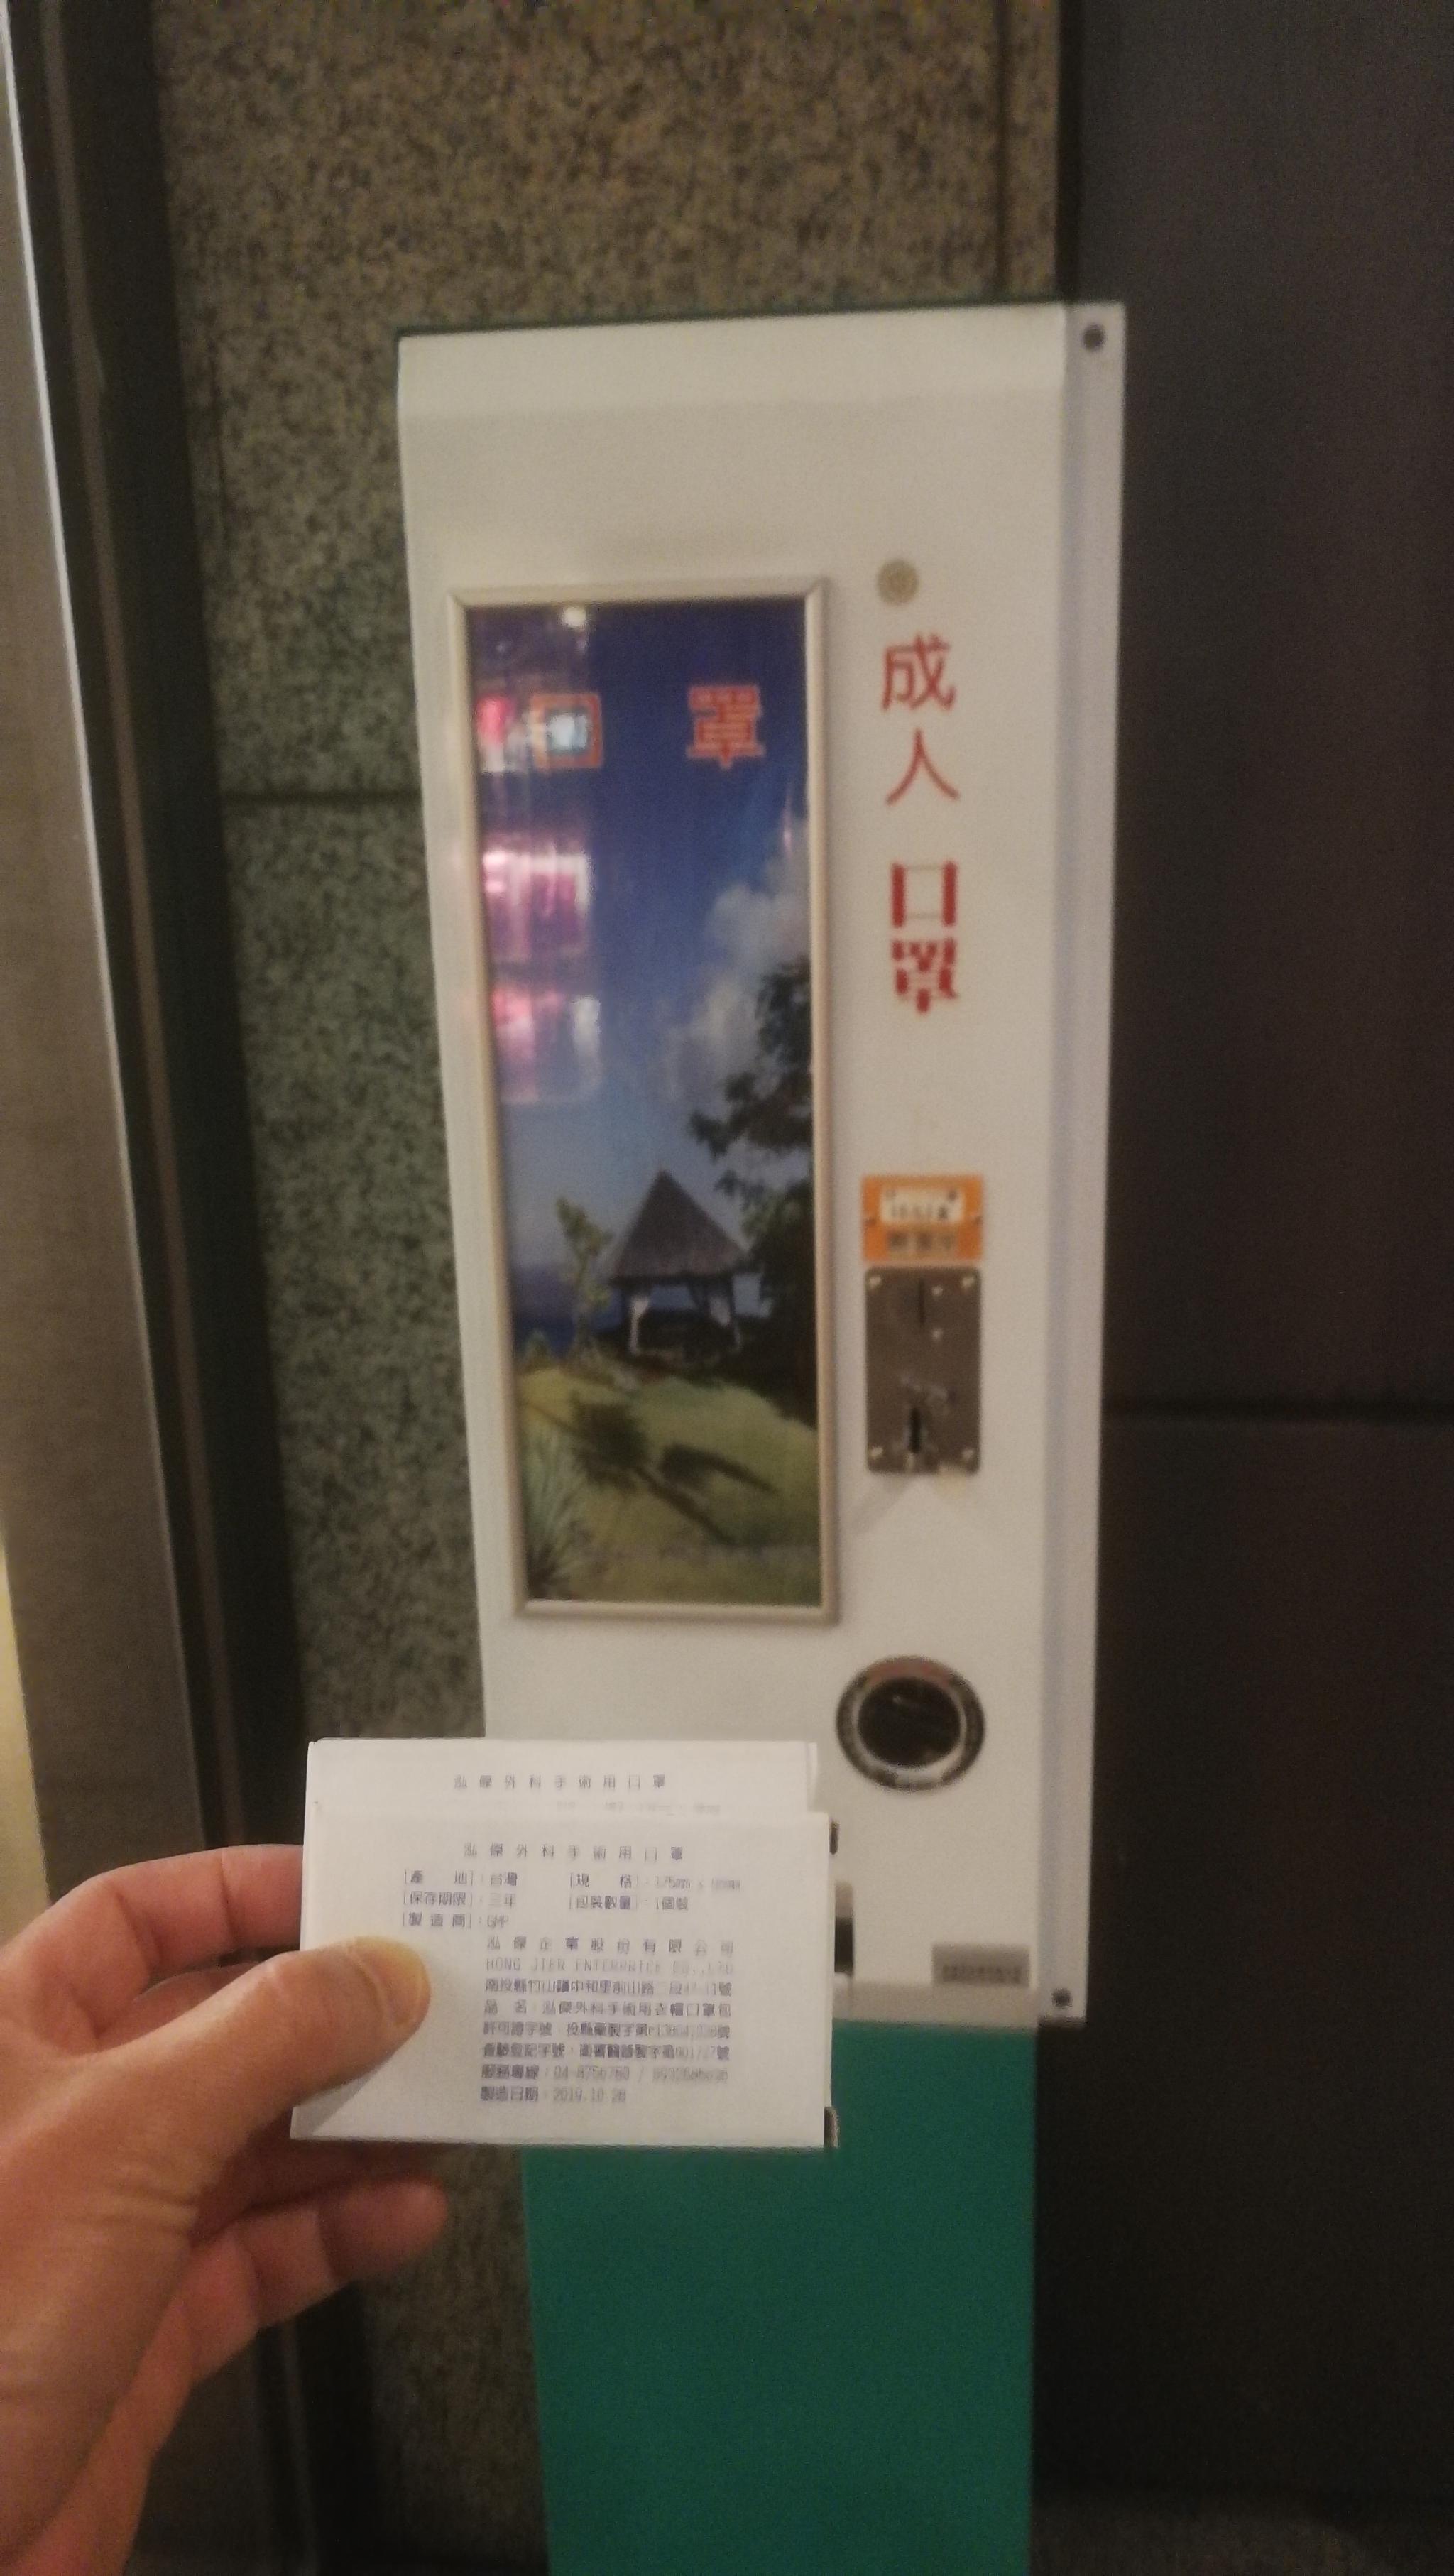 2020年1月28日晚，台中市北区，中国医药大学附属医院急重症大楼门口的外科口罩自动售卖机。本文图片均为作者拍摄并提供。